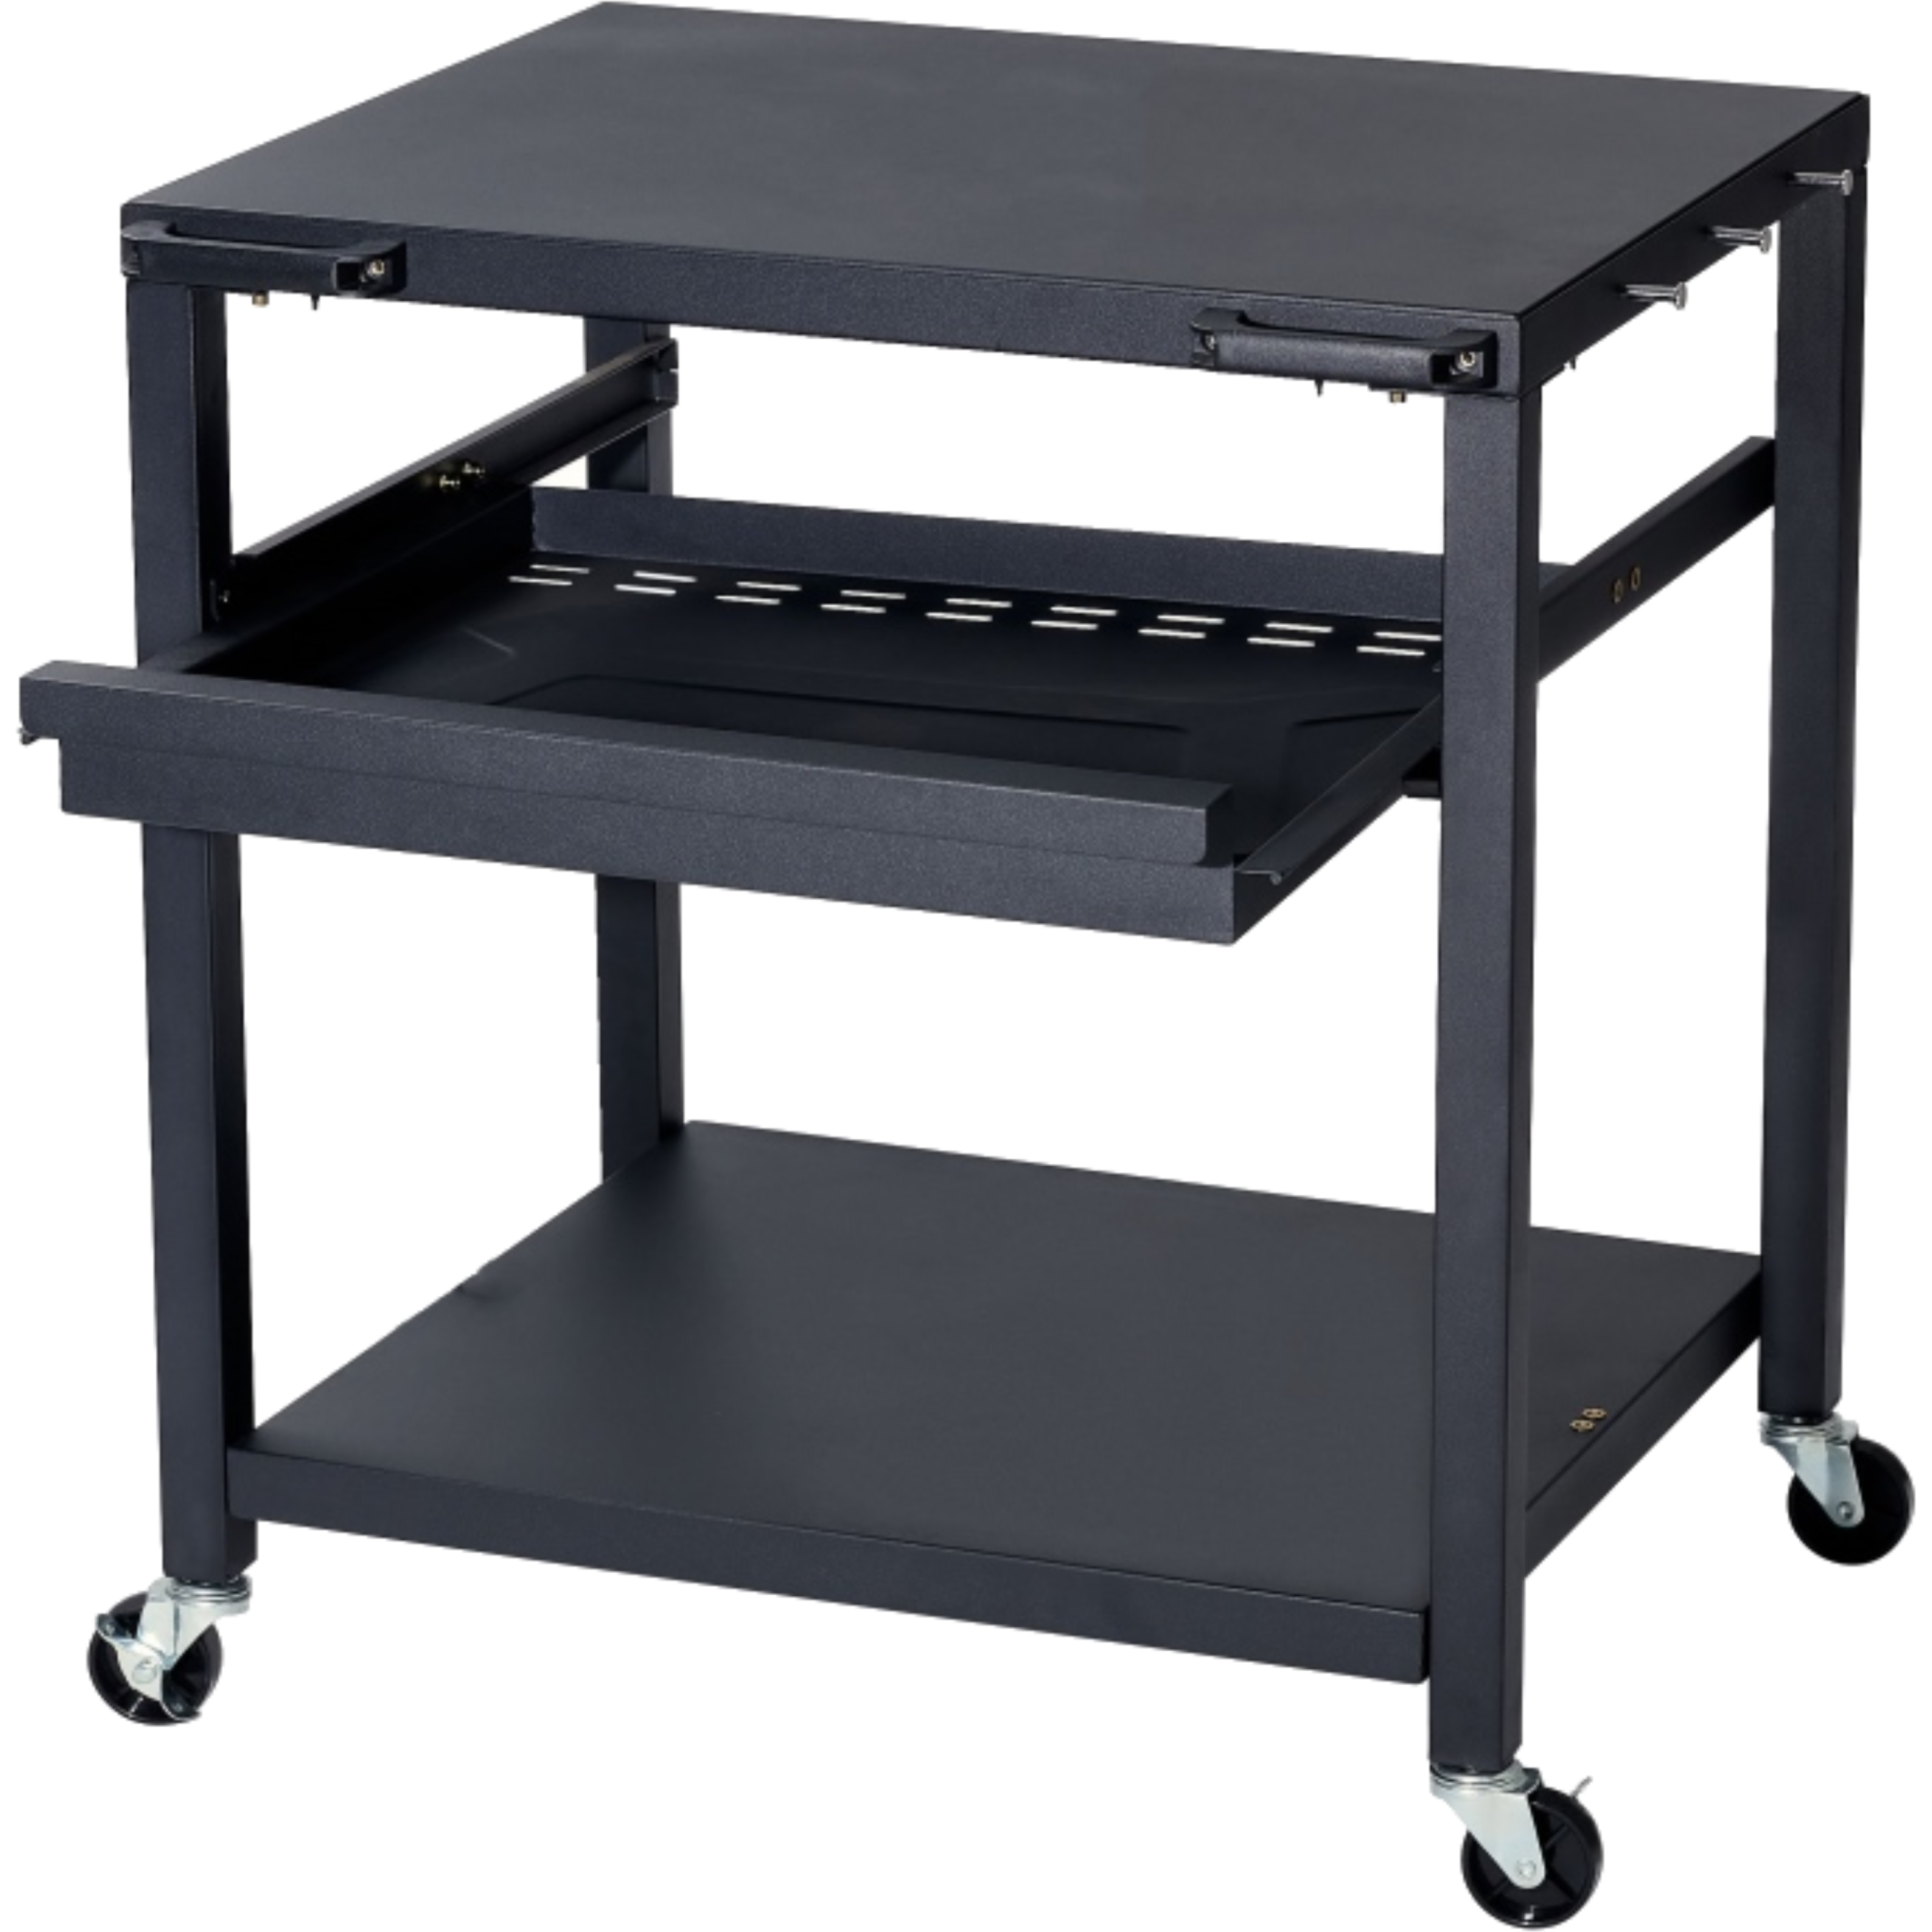 שולחן עגלה לטאבון VIKING משטח עליון 76x61 - צבע שחור